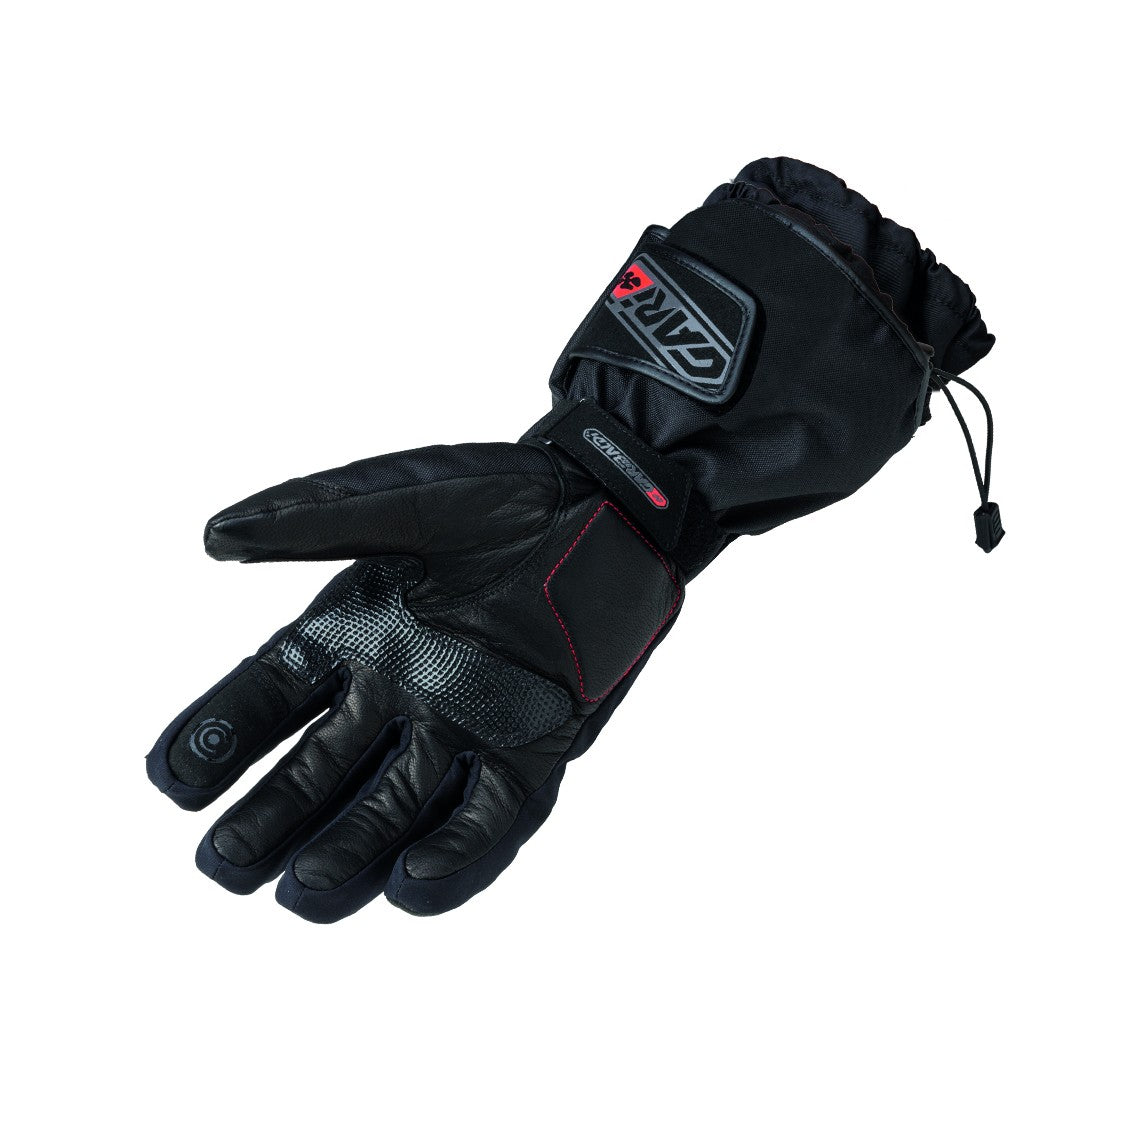 Chaquetas y guantes de chaqueta protectora de protección Etiquetado "Gloves" - Salt Flats Clothing